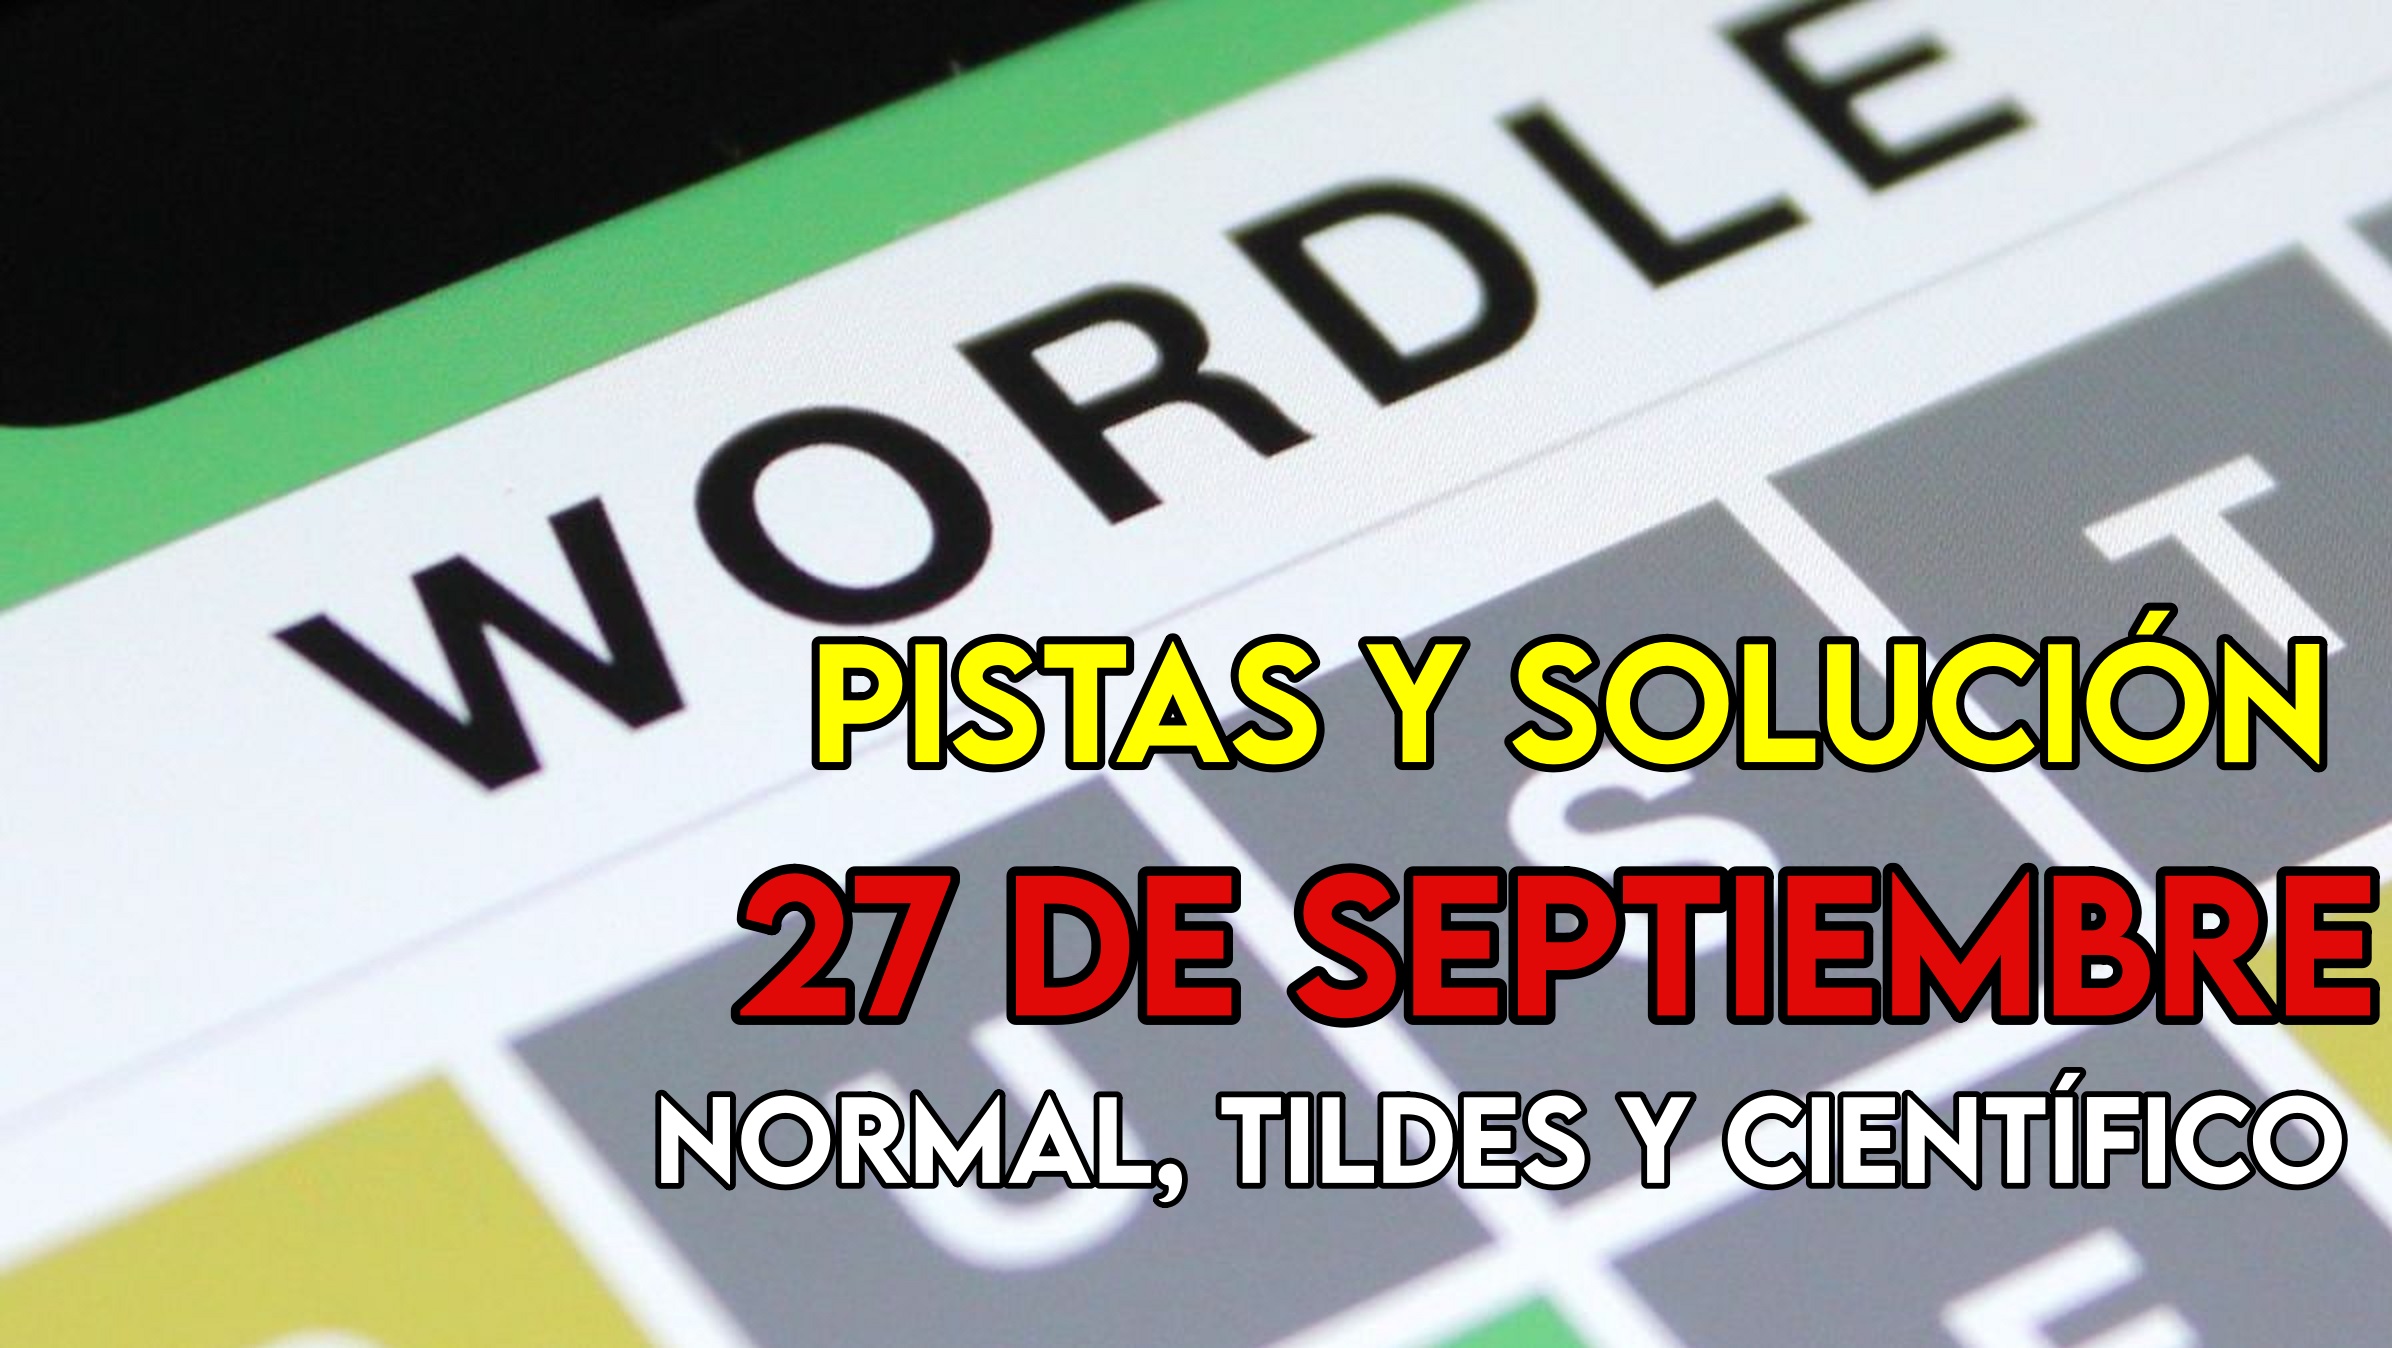 Wordle en español, científico y tildes para el reto de hoy 27 de septiembre: pistas y solución